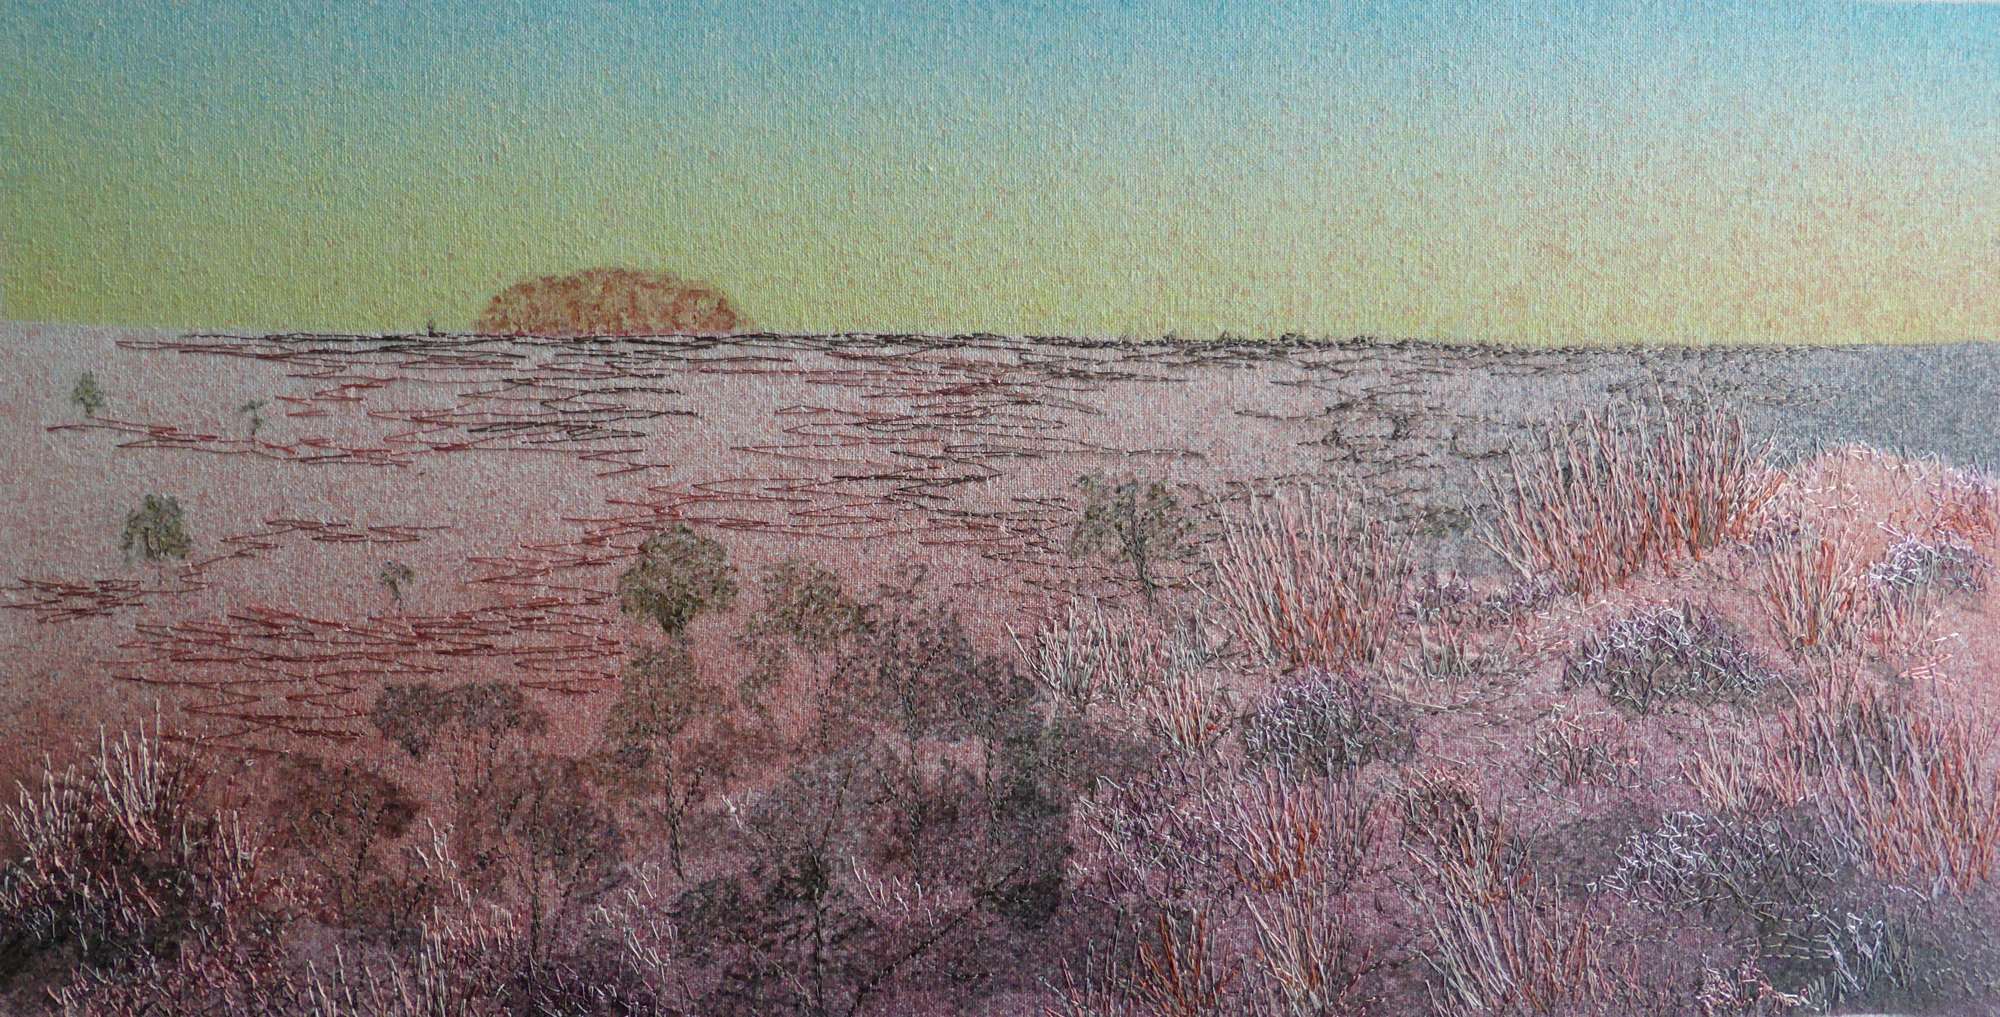 Uluru at Sunrise by Andrea McCallum